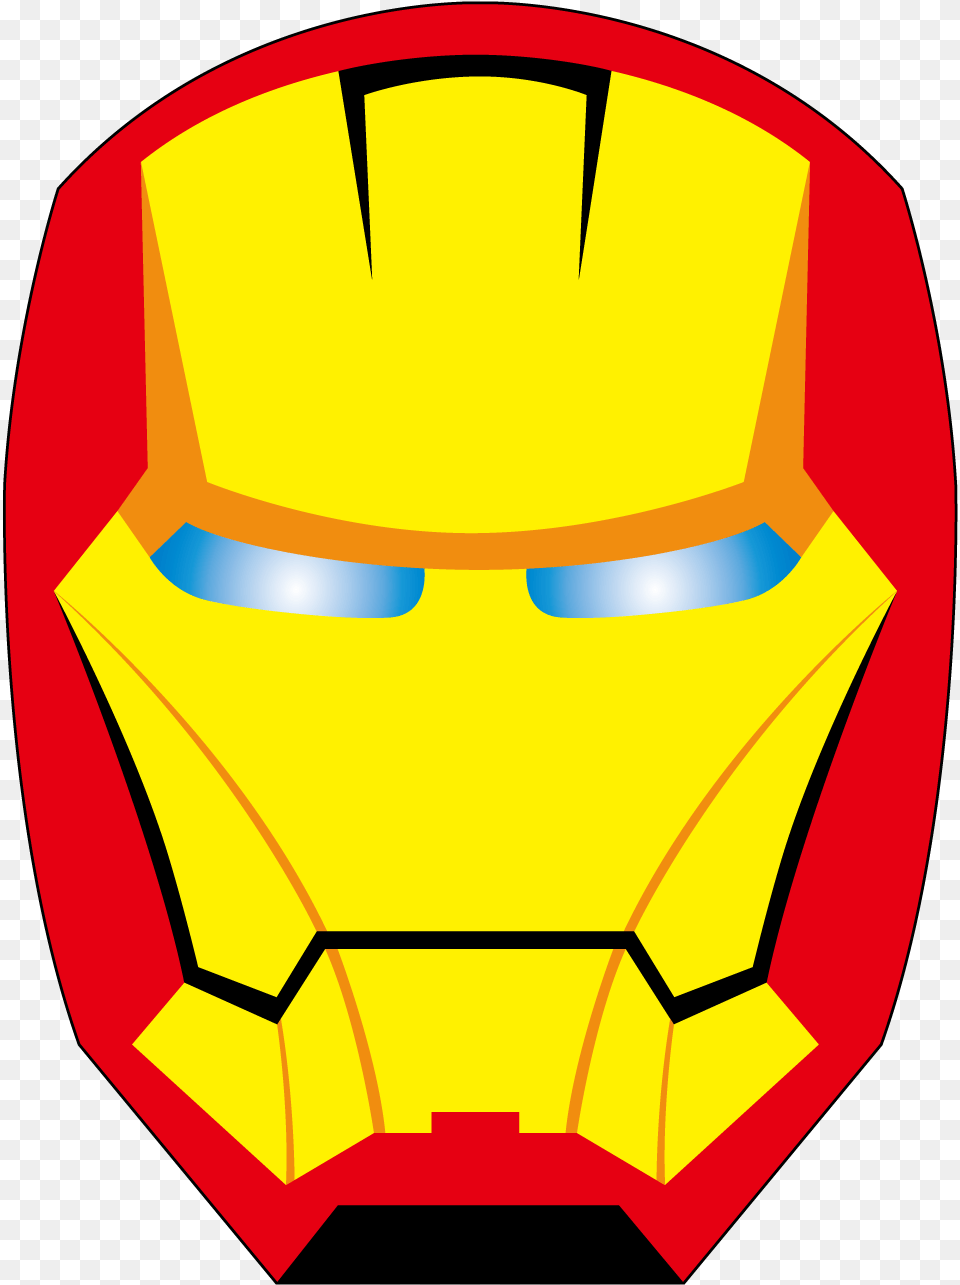 Stock Iron Man Spider Superhero Cartoon Altman Iron Man Face Cartoon, Logo, Lamp Free Png Download